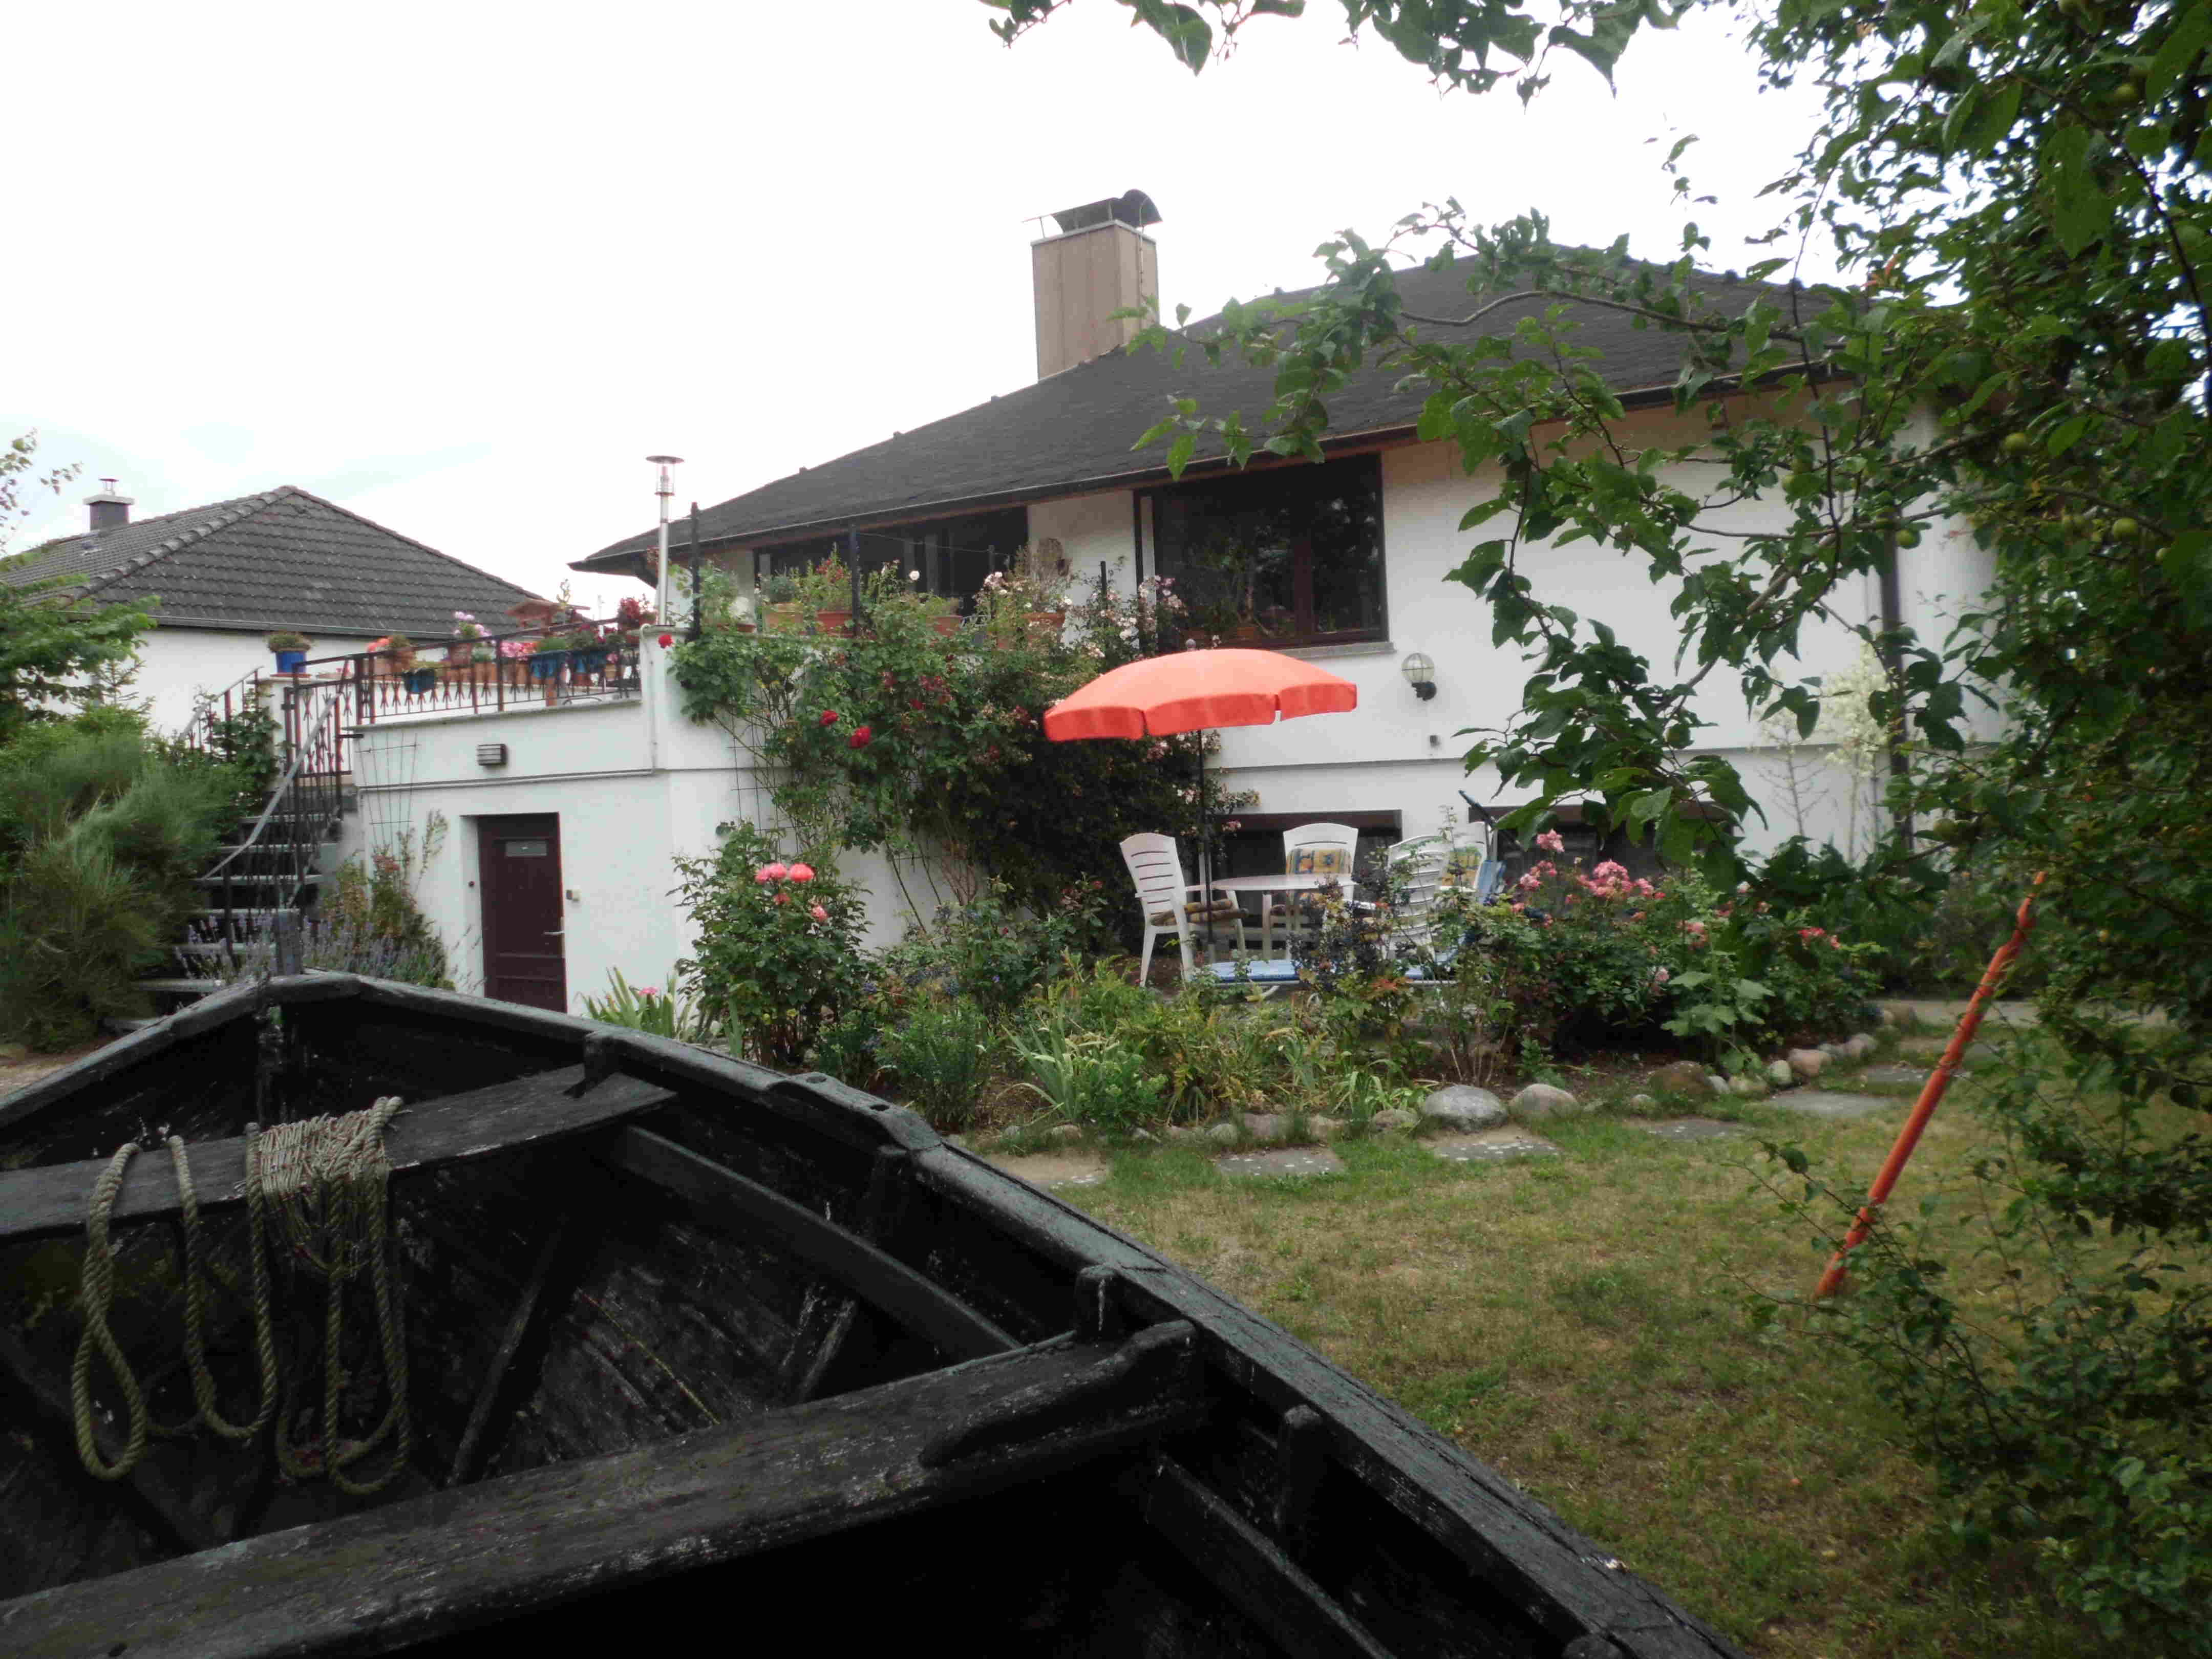 Haus Sedina mit Terrasse und Garten zum Erholen. Im Vordergrund ein altes Fischerboot, rechts die Schaukel für die Kinder